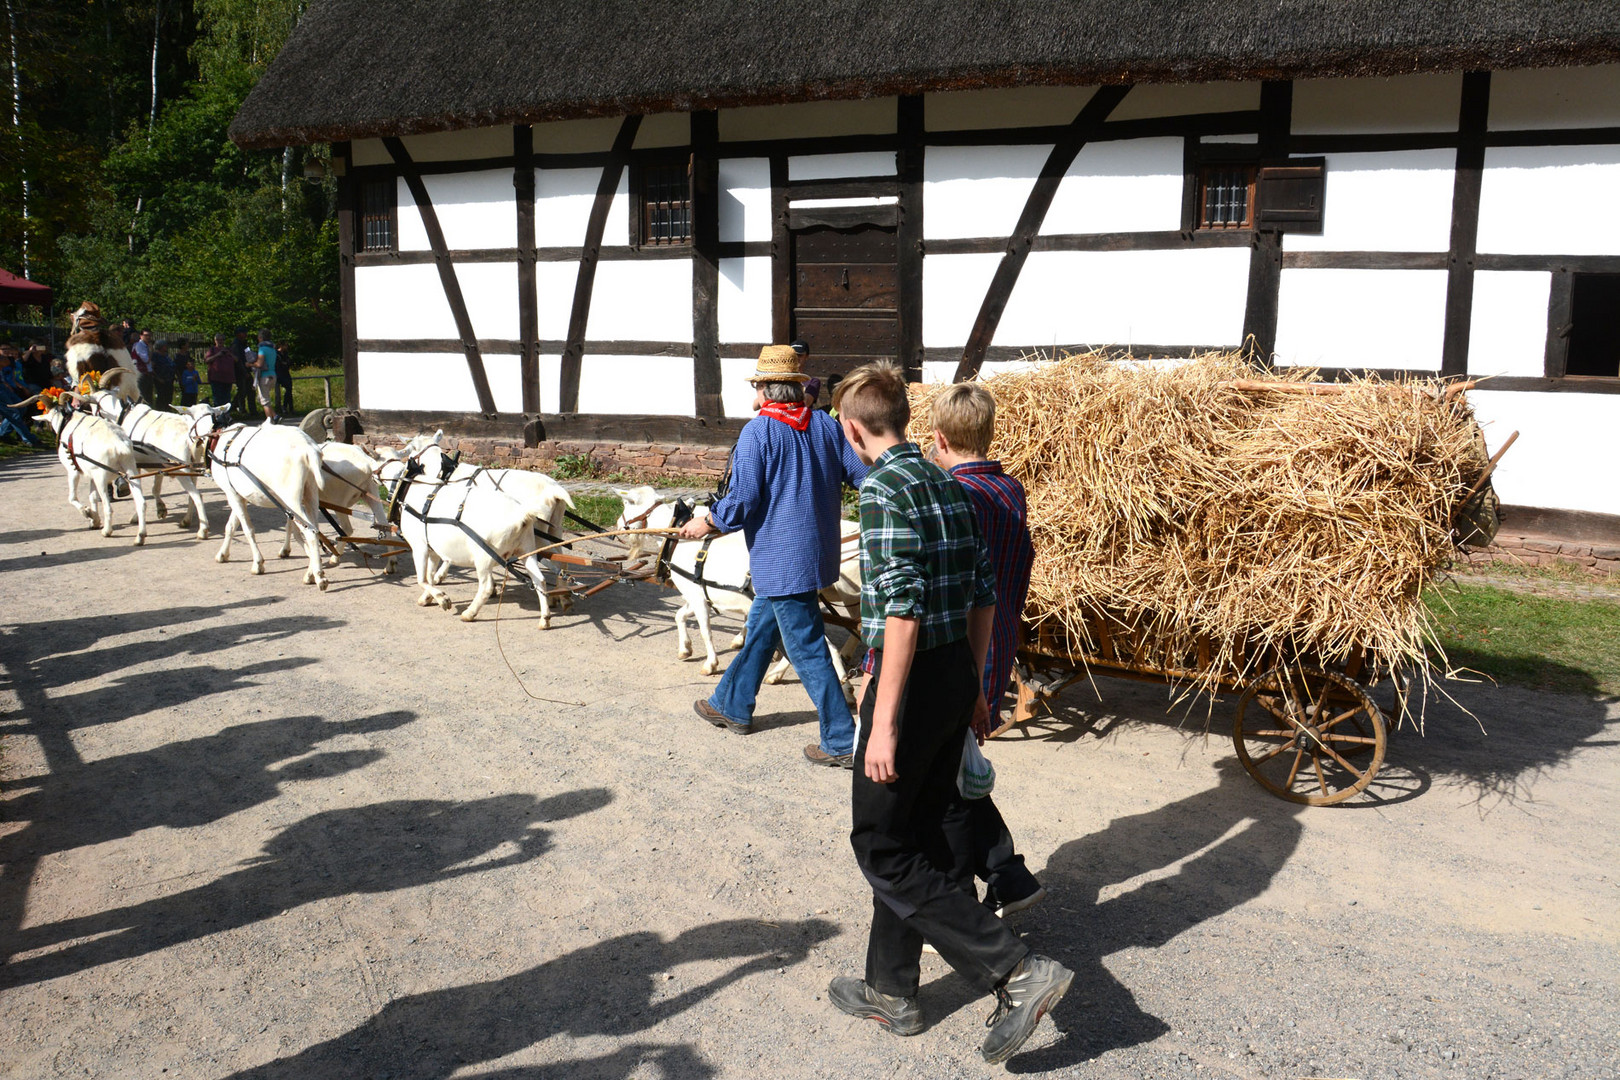 Ein außergewöhnliches Gespann: 8 Ziegen ziehen einen Erntewagen